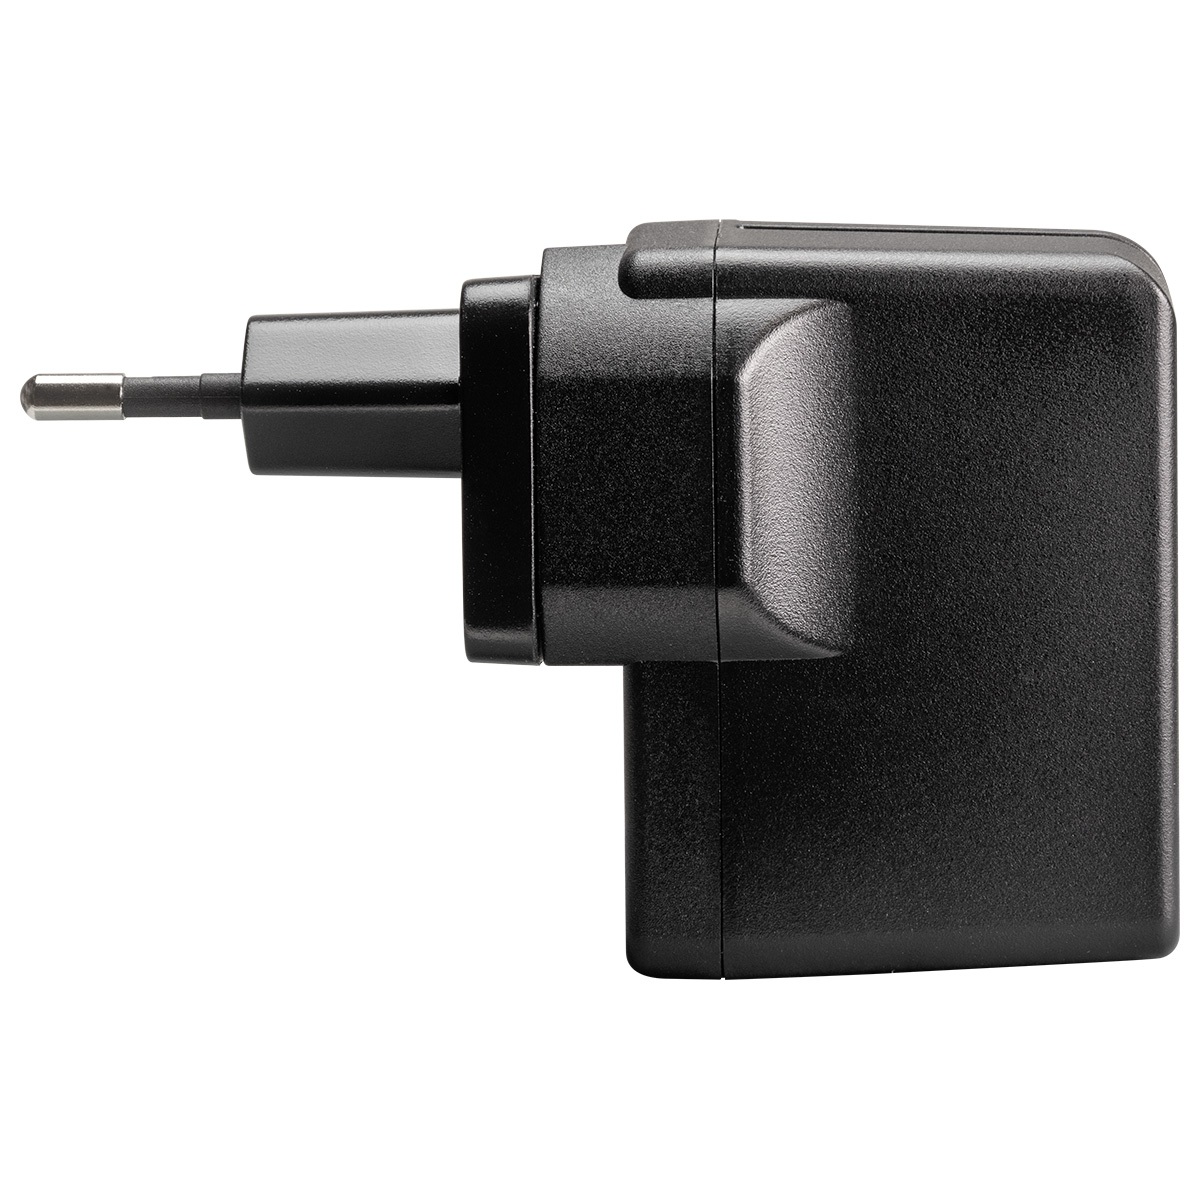 Adaptateur d'alimentation USB pour les remontoirs de montre Boxy BLDC Nightstand avec 2 broches
interchangeables UE / UK